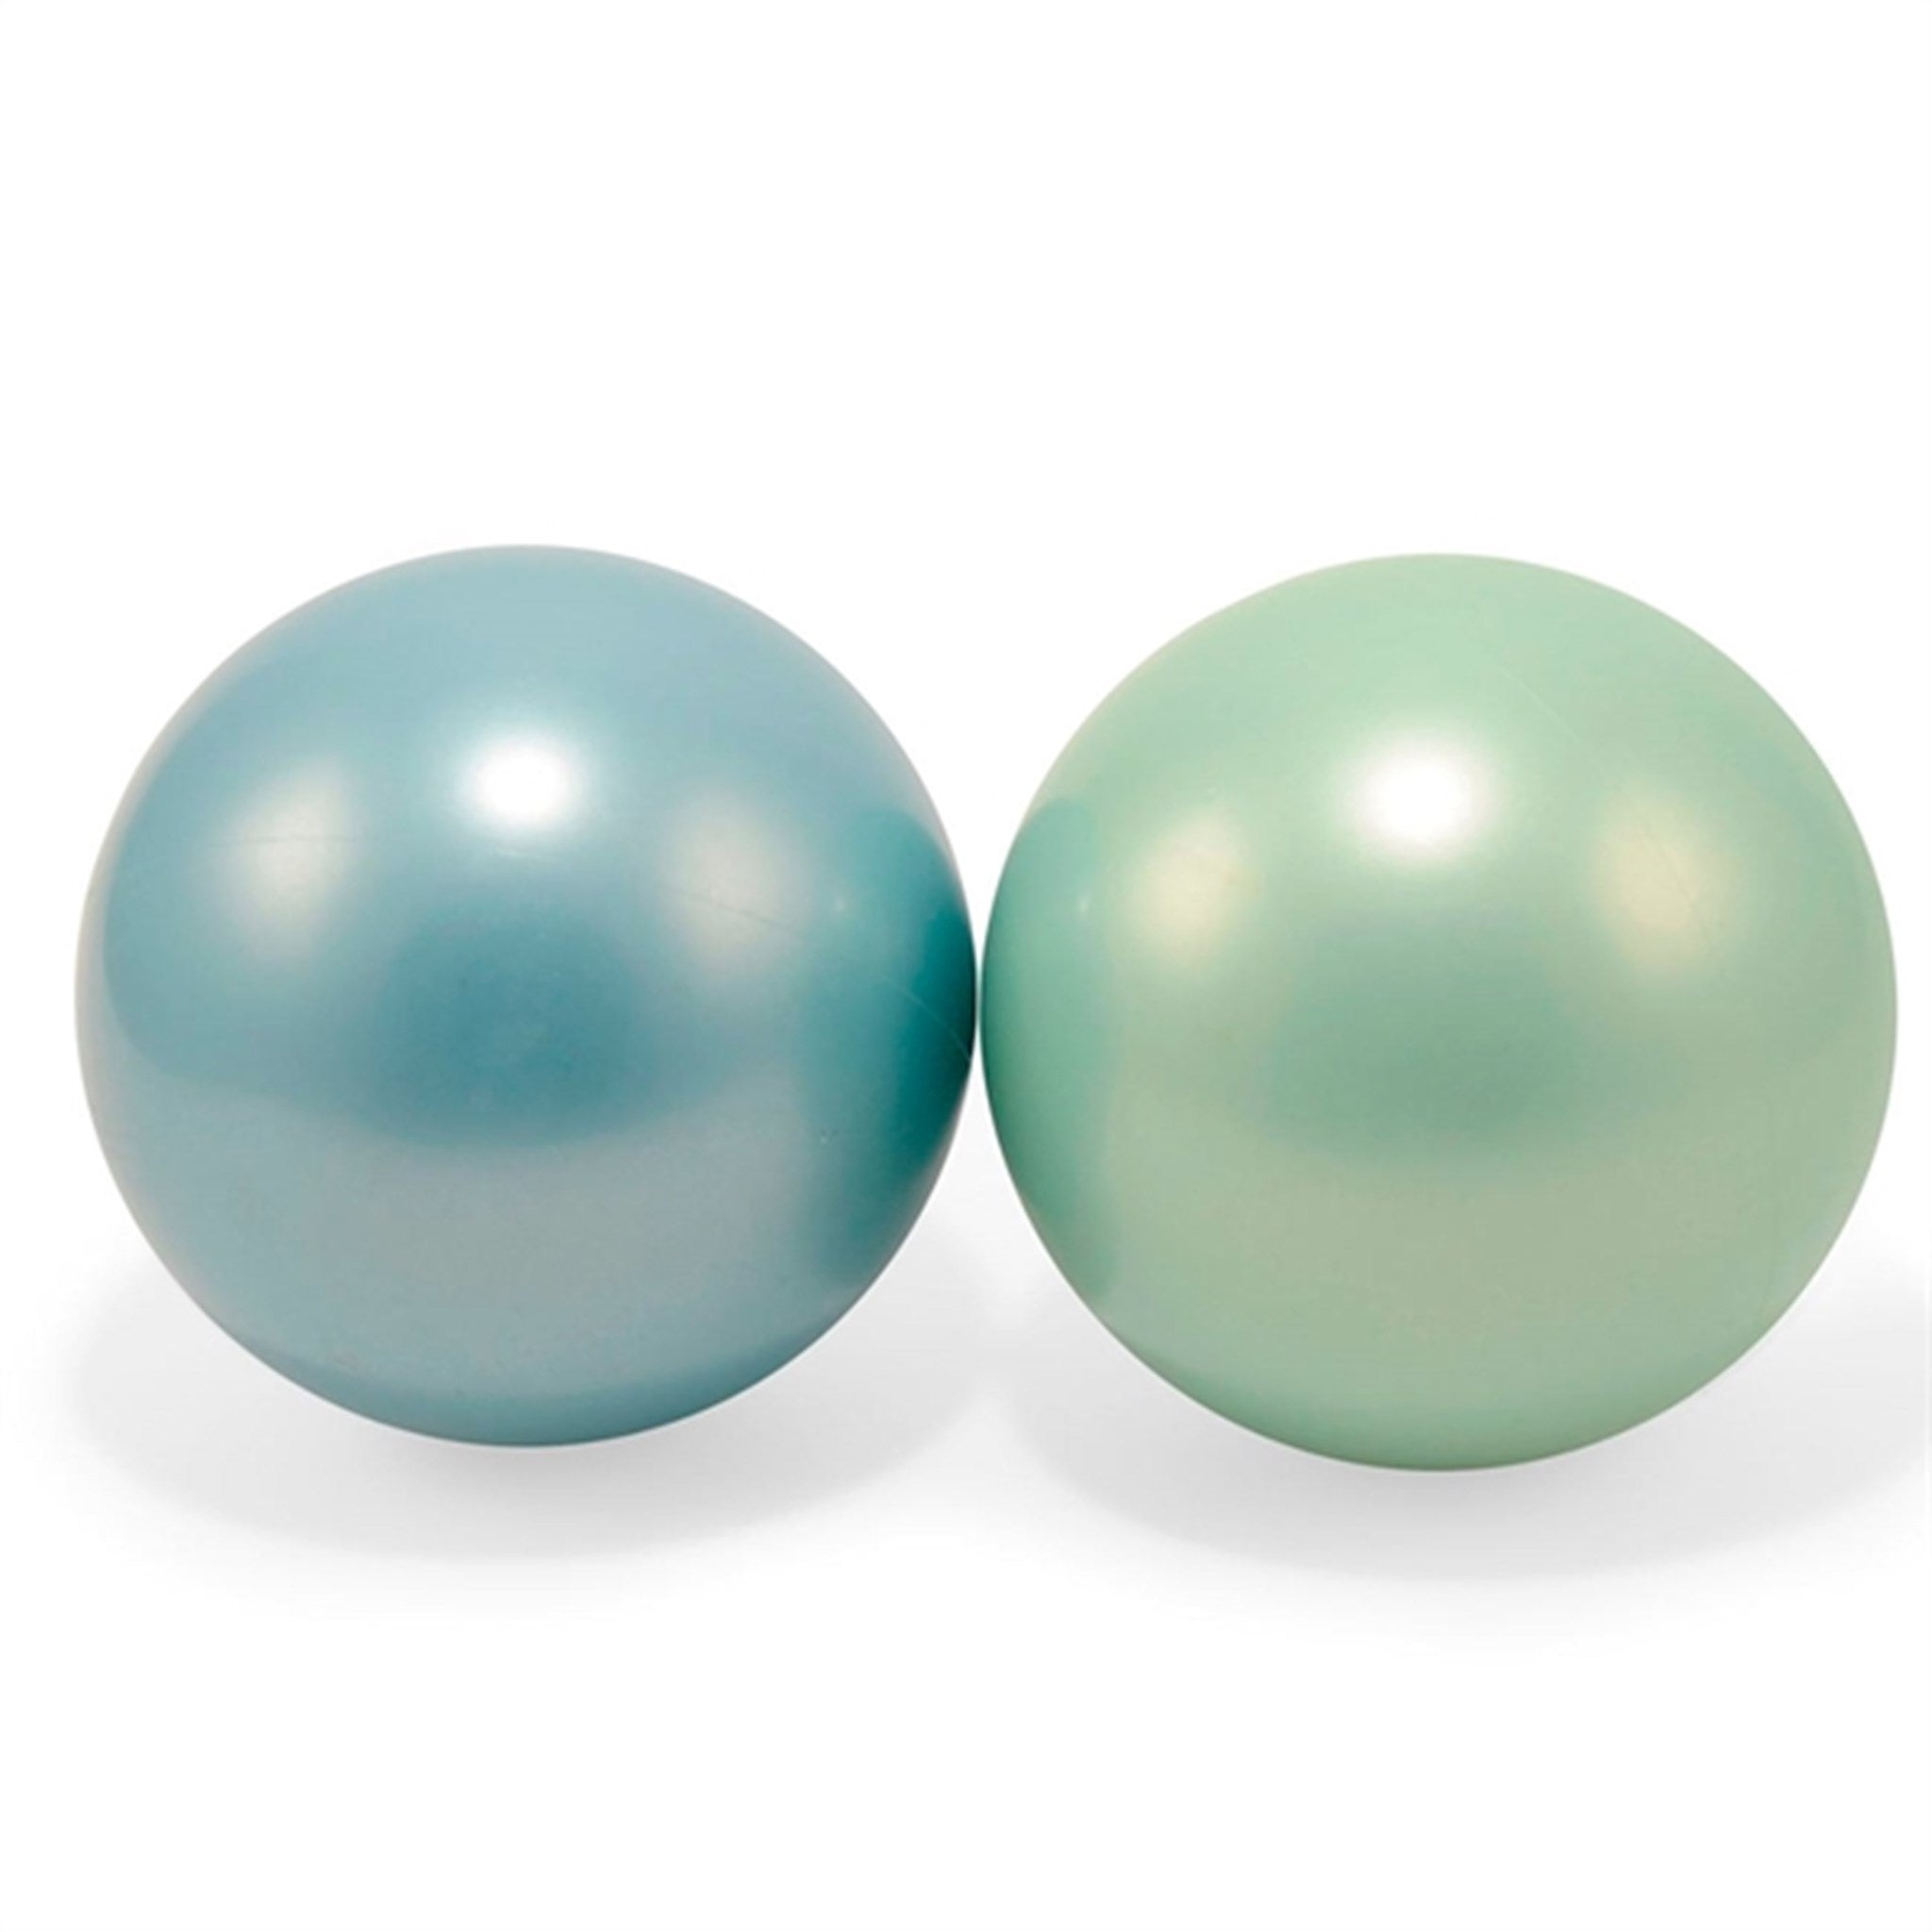 Magni Balls Green/Blue